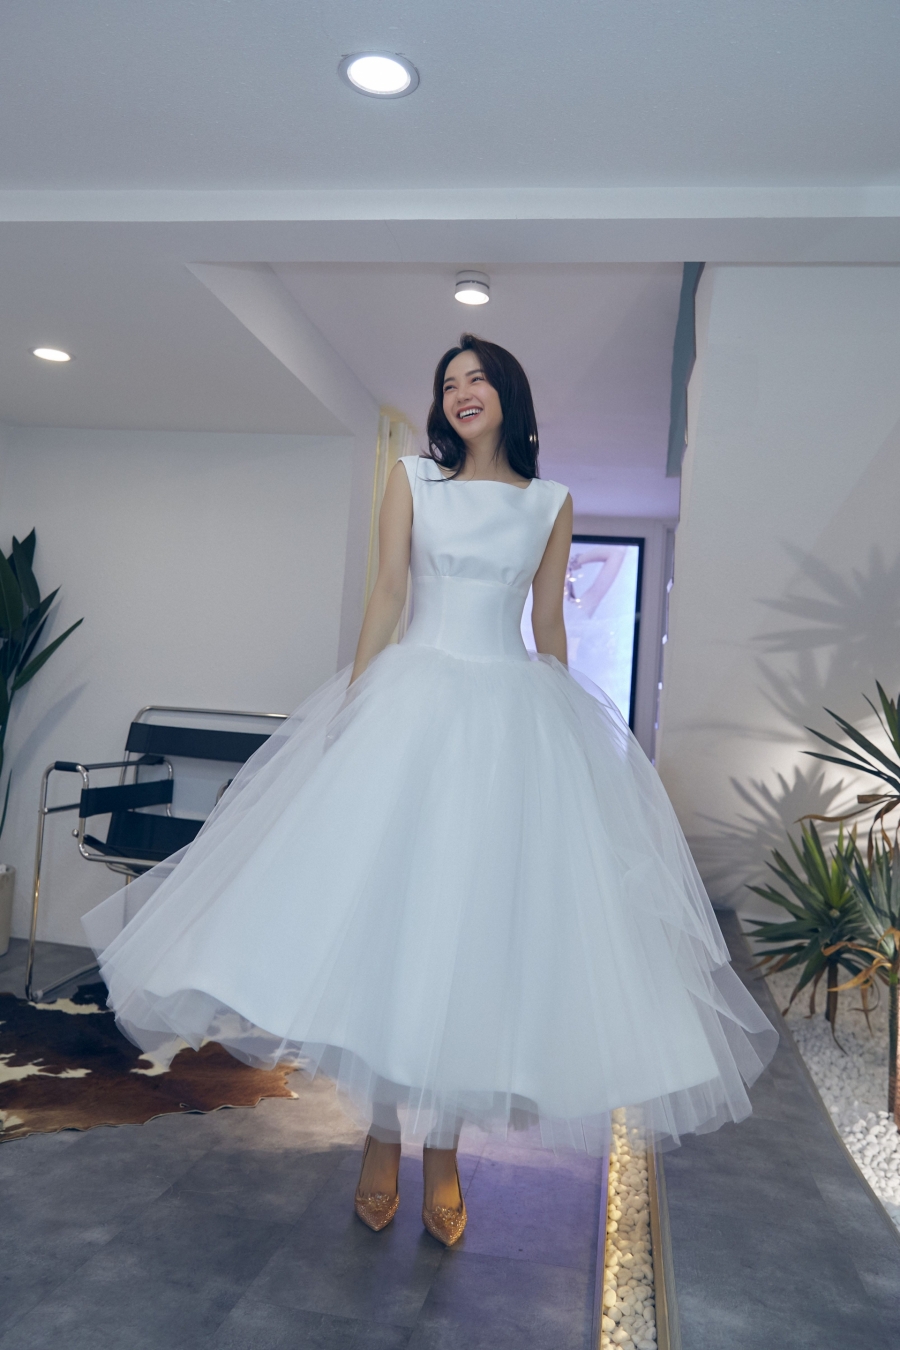 Vừa thử váy cưới Minh Hằng đã thoát vai để 'hóa' nữ doanh nhân sành điệu - Ảnh 6